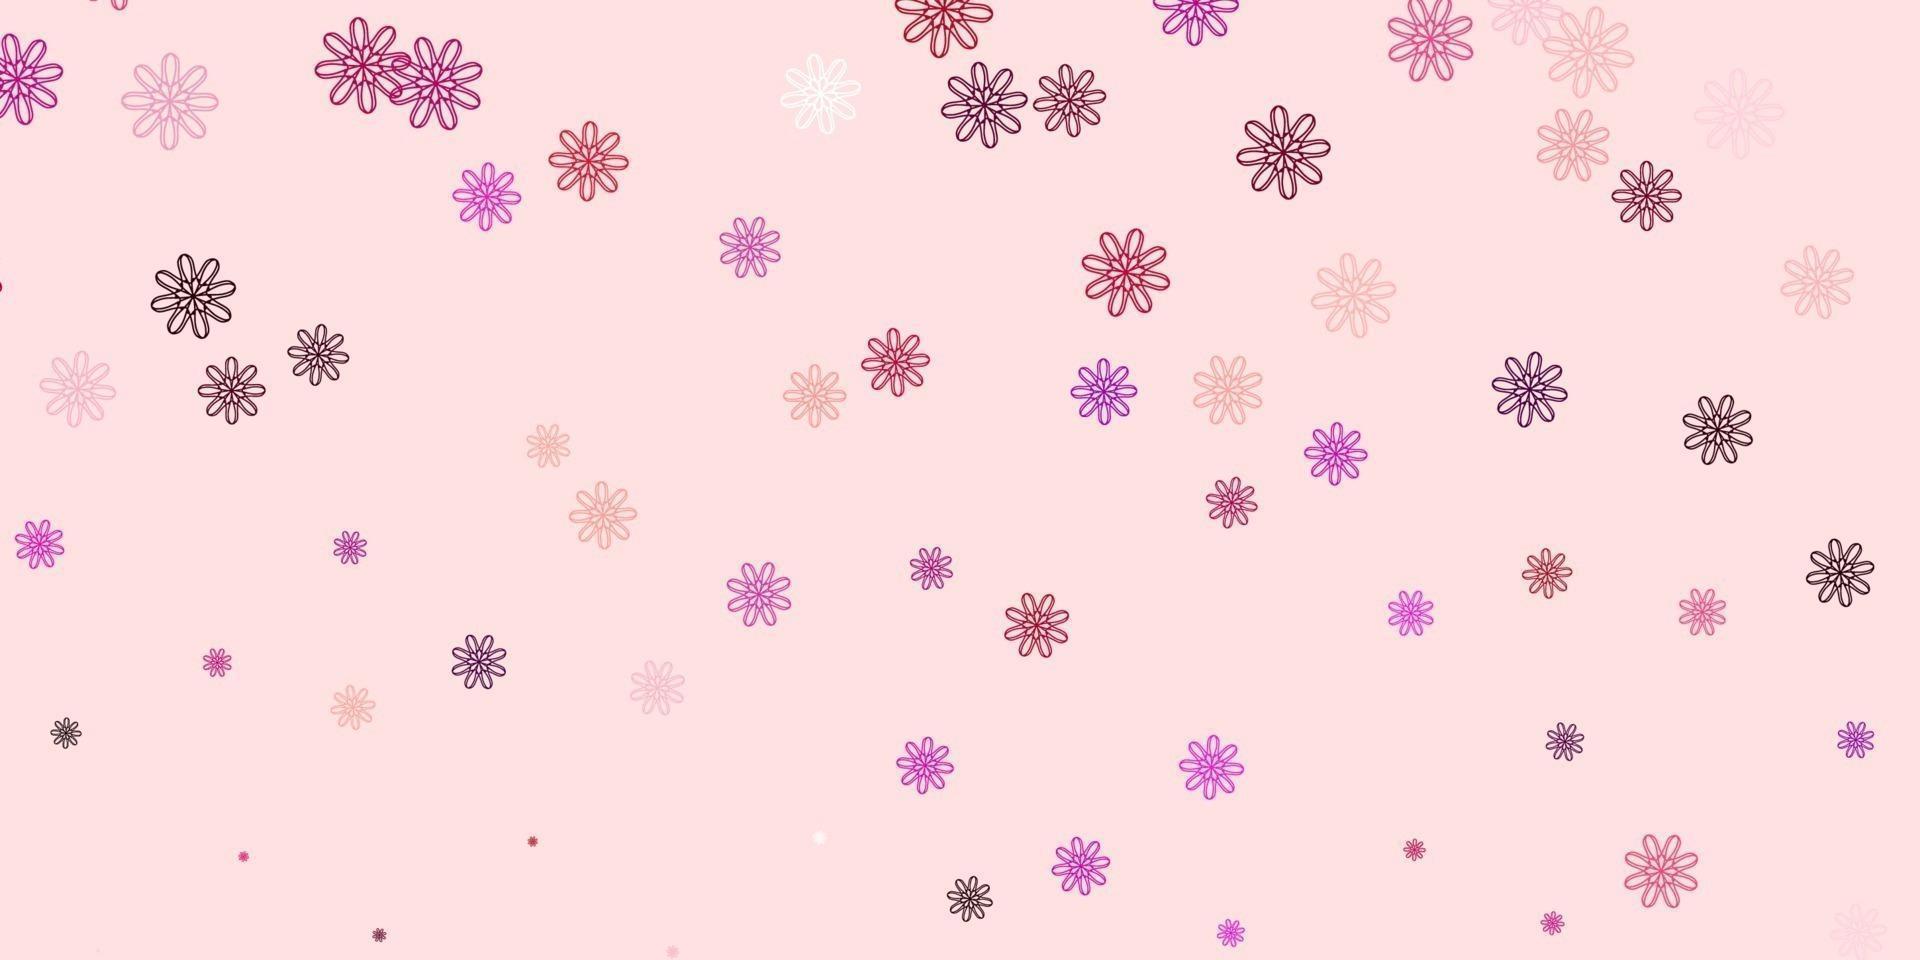 modèle de doodle de vecteur rose clair avec des fleurs.